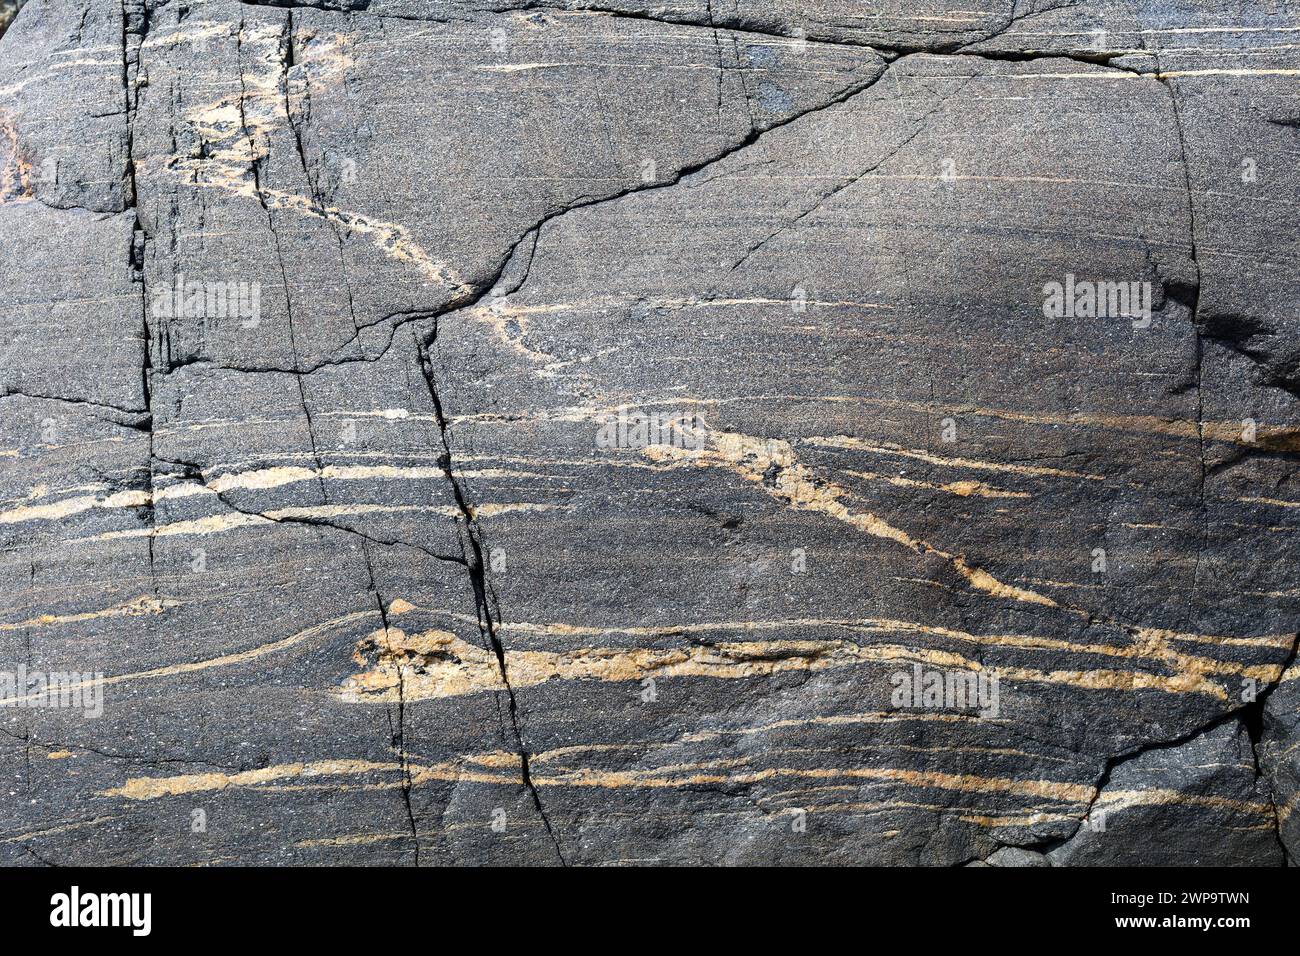 Particolare della roccia granitica nella regione costiera occidentale della Svezia, Scandinavia Foto Stock